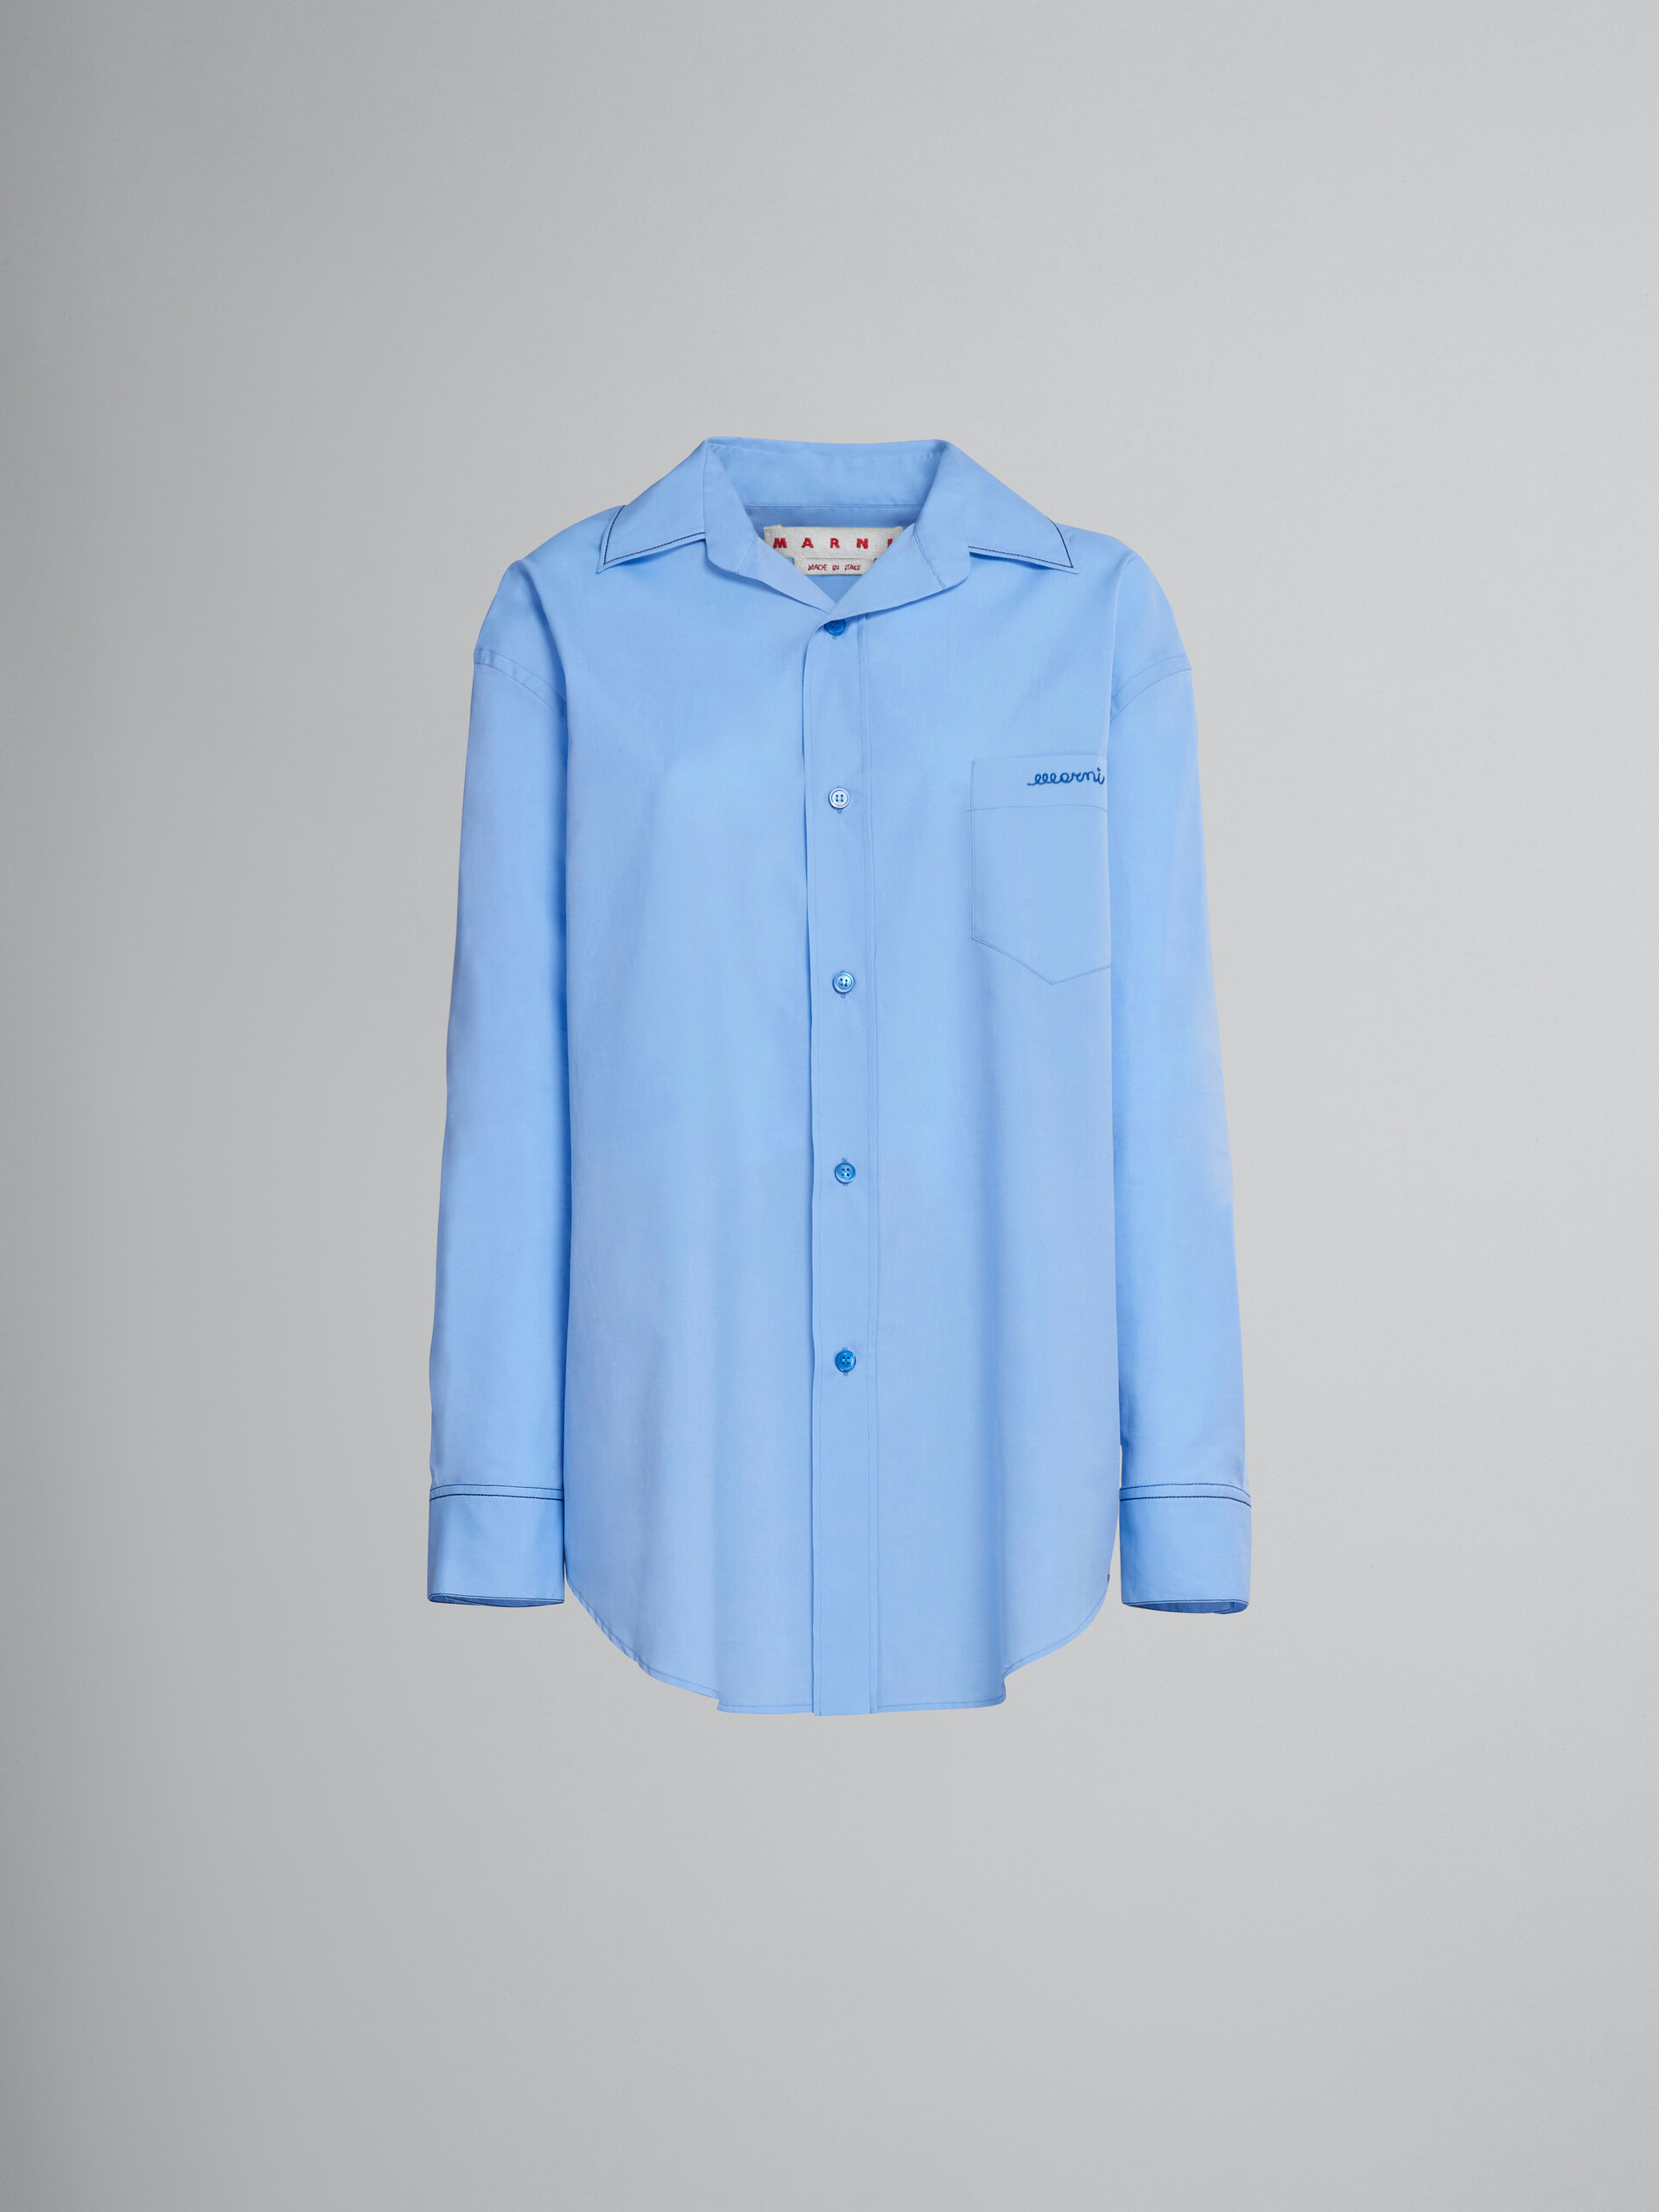 Chemise en coton biologique bleu clair avec logo brodé - Chemises - Image 1